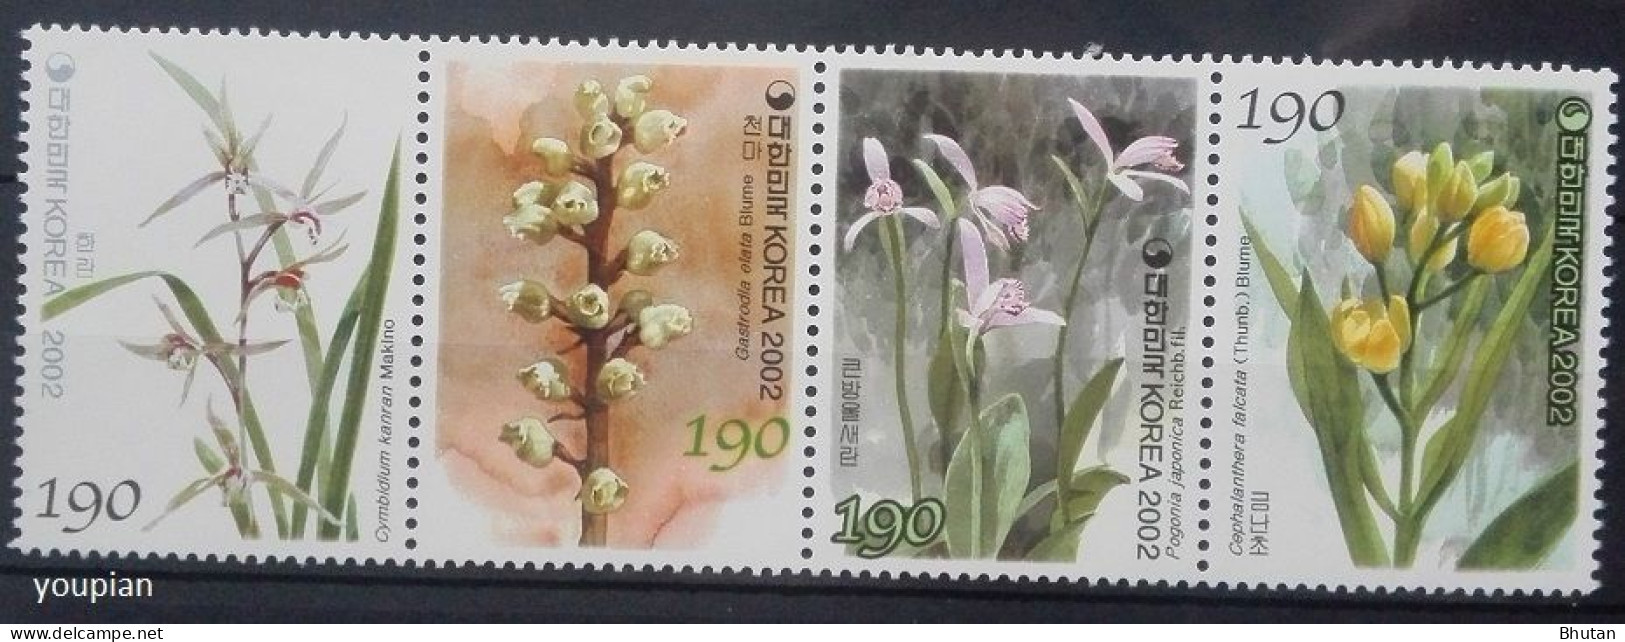 South Korea 2002, Flowers, MNH Unusual Stamps Strip - Corée Du Sud